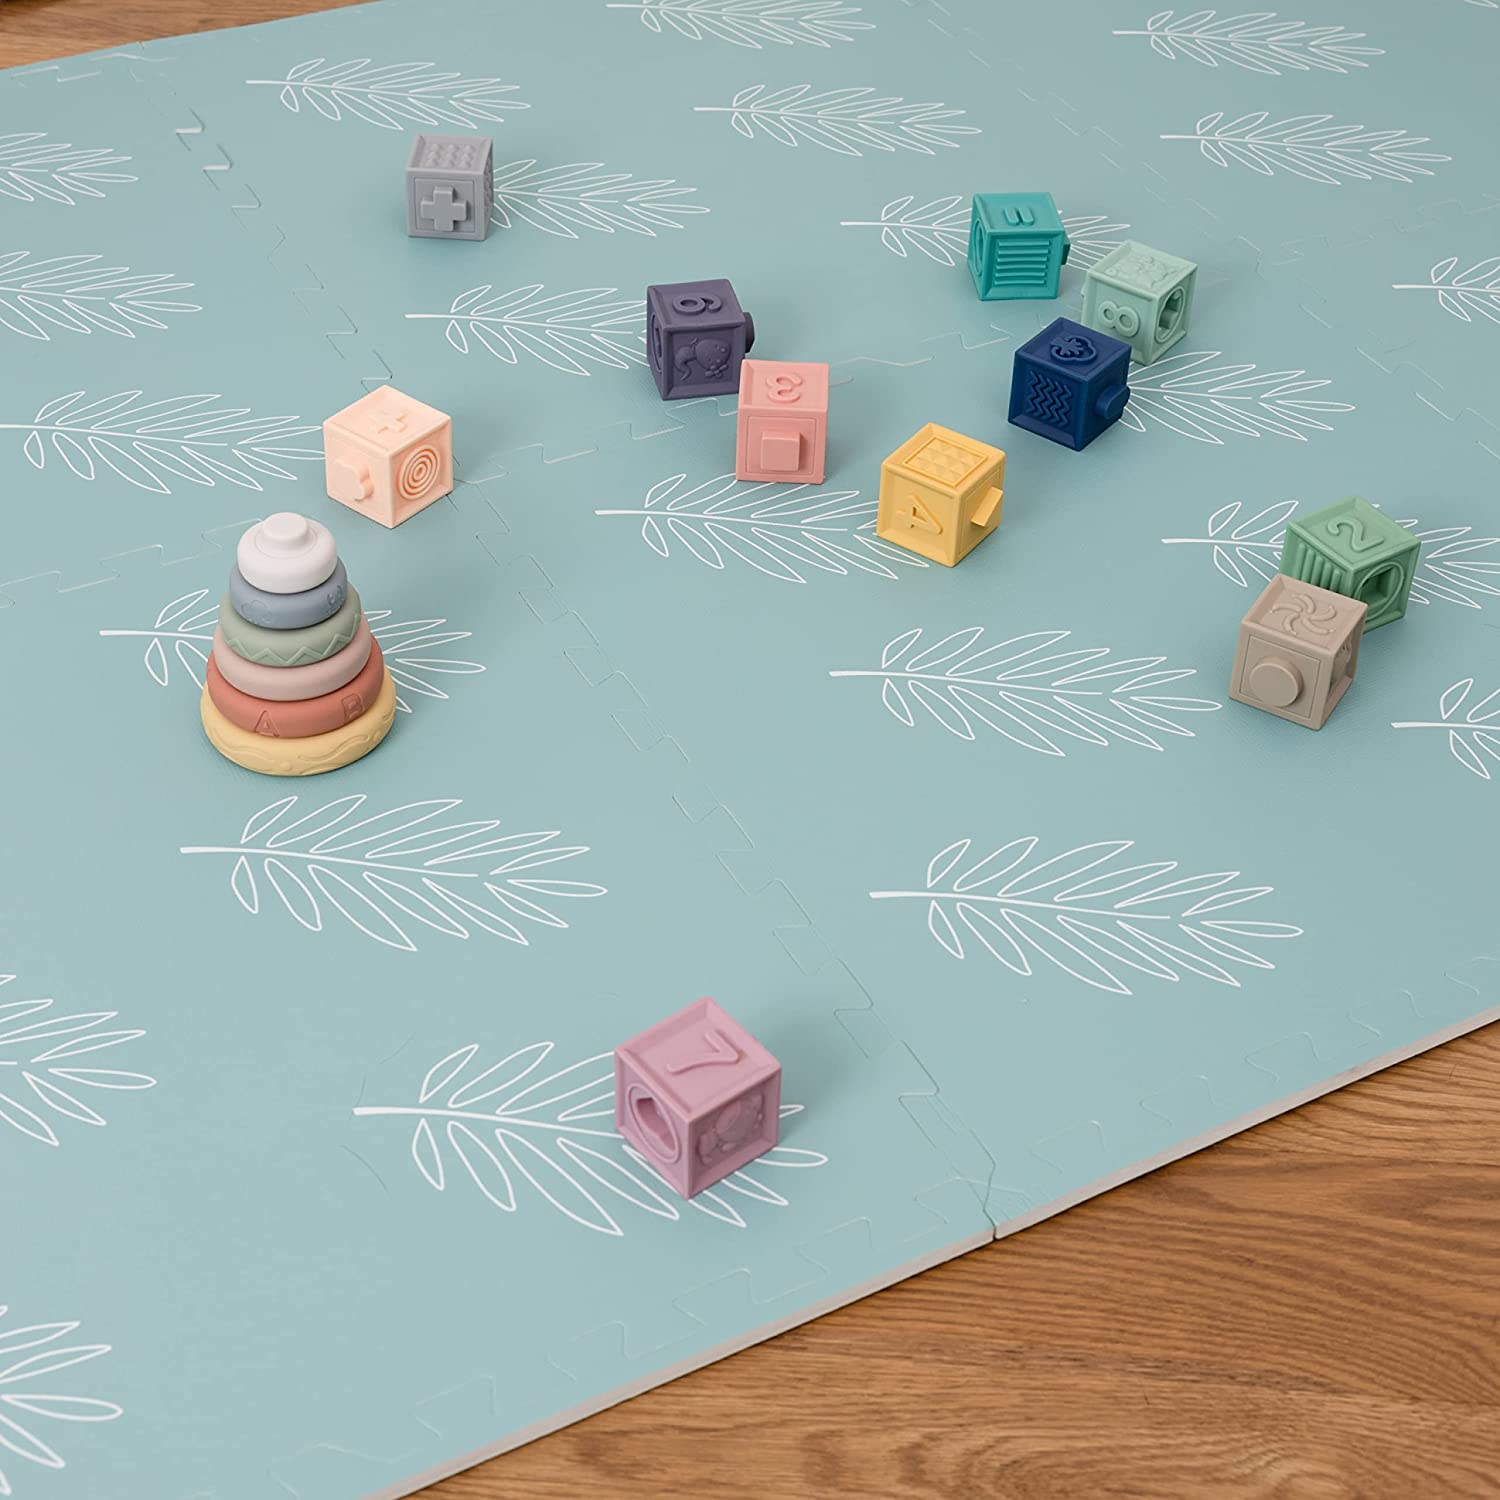 Tuiles de tapis de jeu de puzzle - Conception de thème de feuille